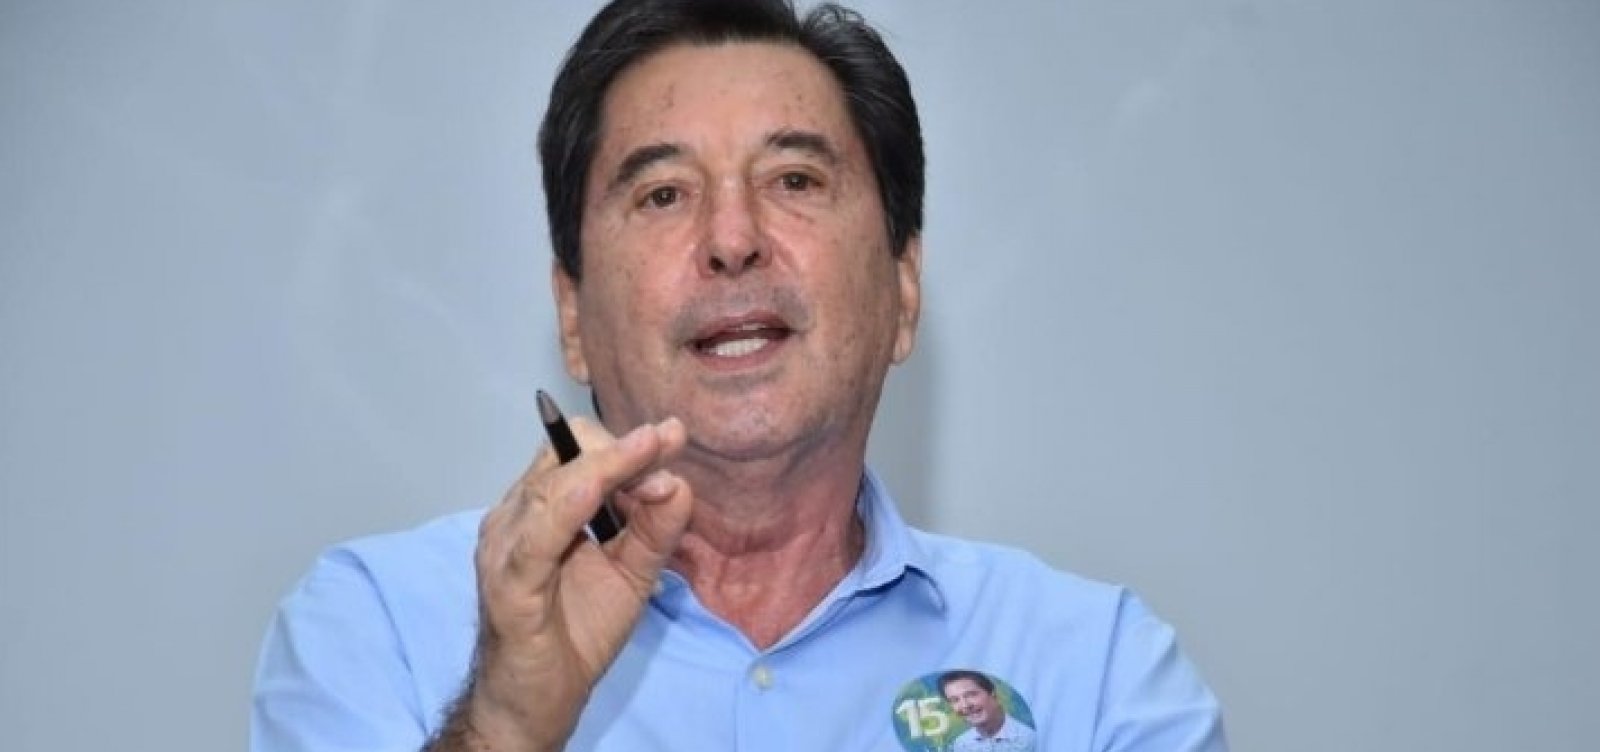 Goiânia elege Maguito Vilela; político está internado com Covid